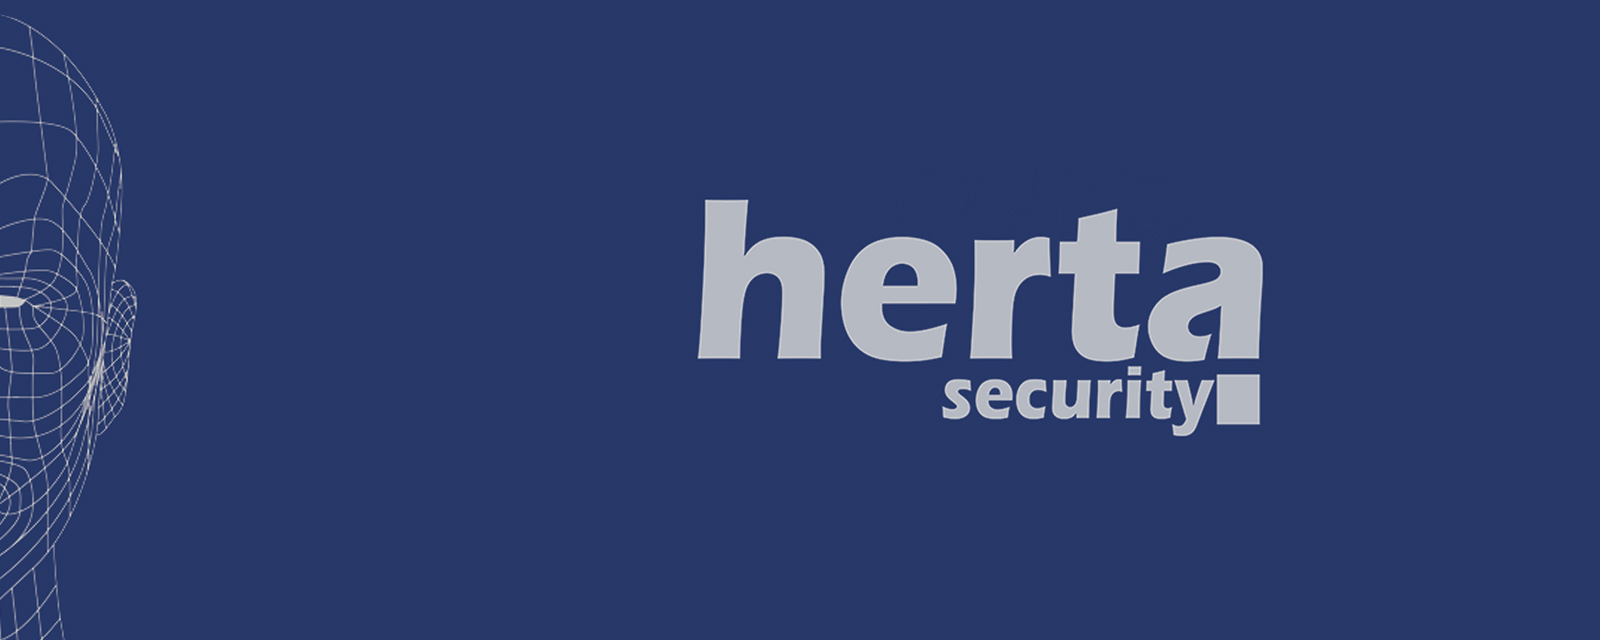 hero-banner-for-Herta